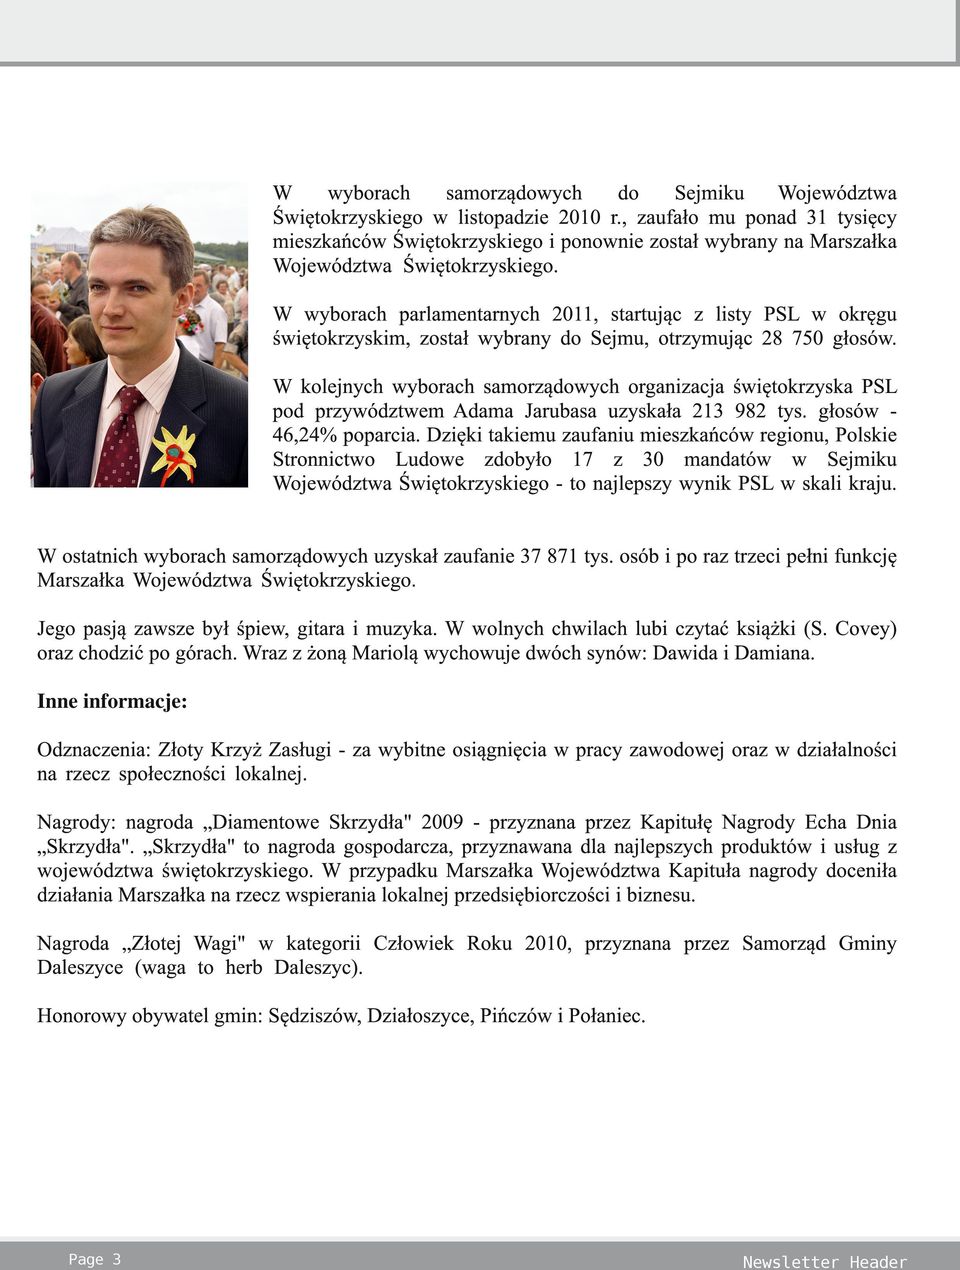 W wyborach parlamentarnych 2011, startując z listy PSL w okręgu świętokrzyskim, został wybrany do Sejmu, otrzymując 28 750 głosów.